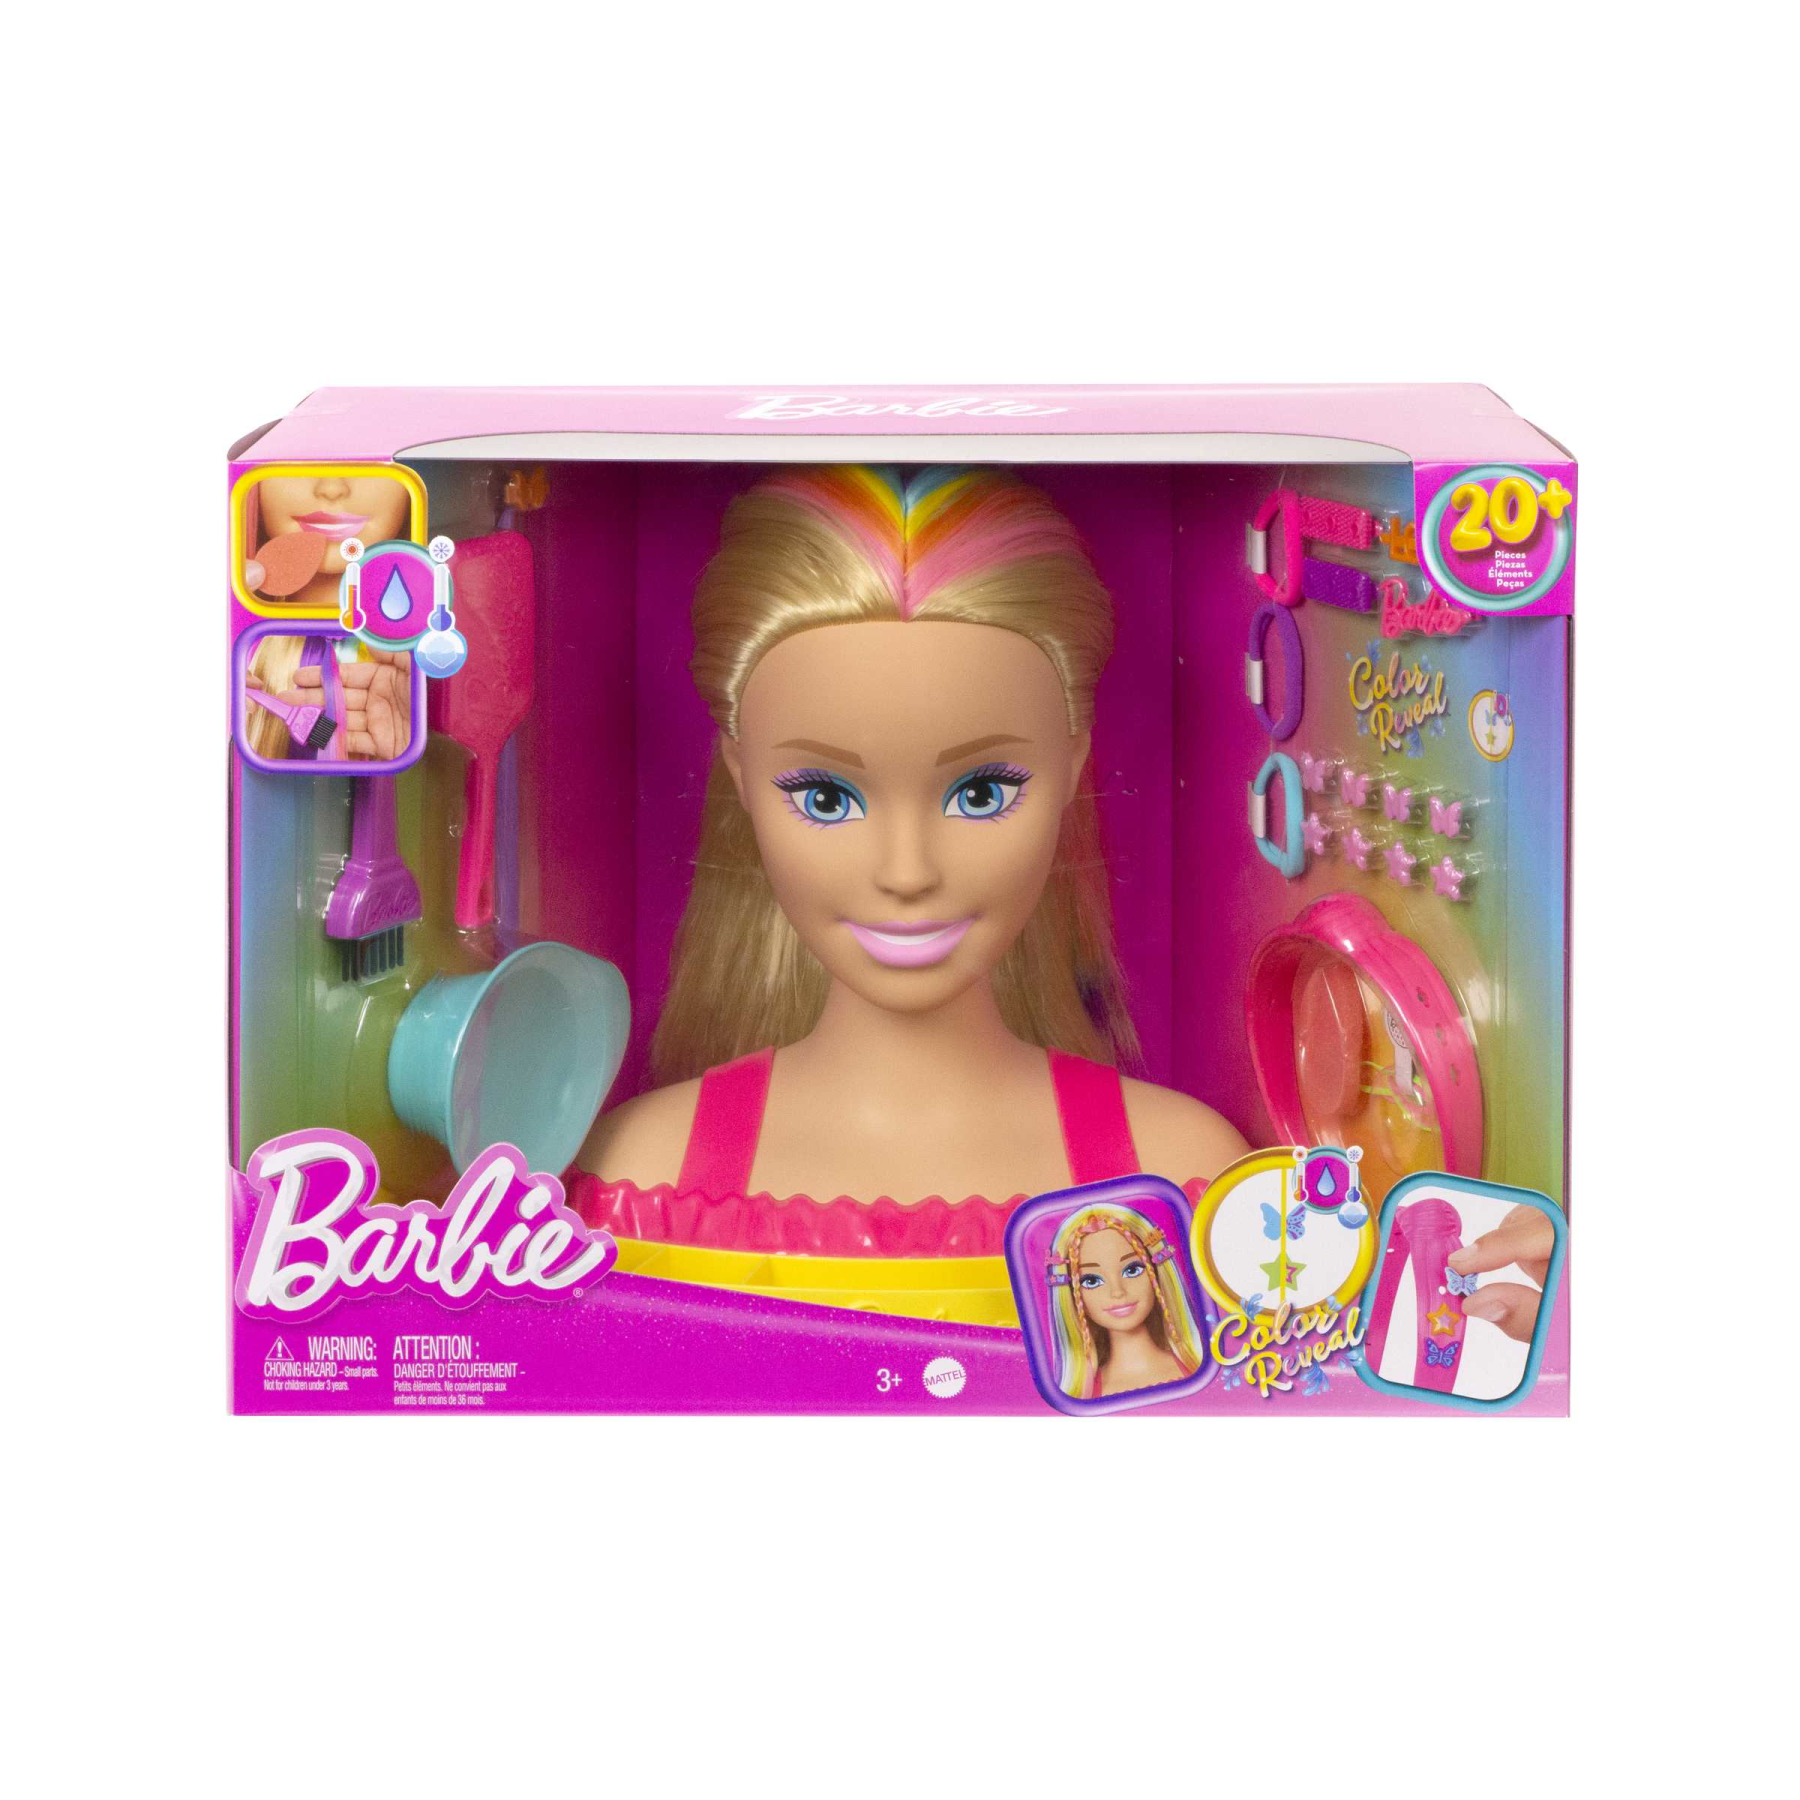 Barbie - super chioma hairstyle capelli arcobaleno, testa pettinabile con capelli biondi e ciocche arcobaleno fluo da acconciare, con accessori color reveal, 3+ anni, hmd78 - Barbie